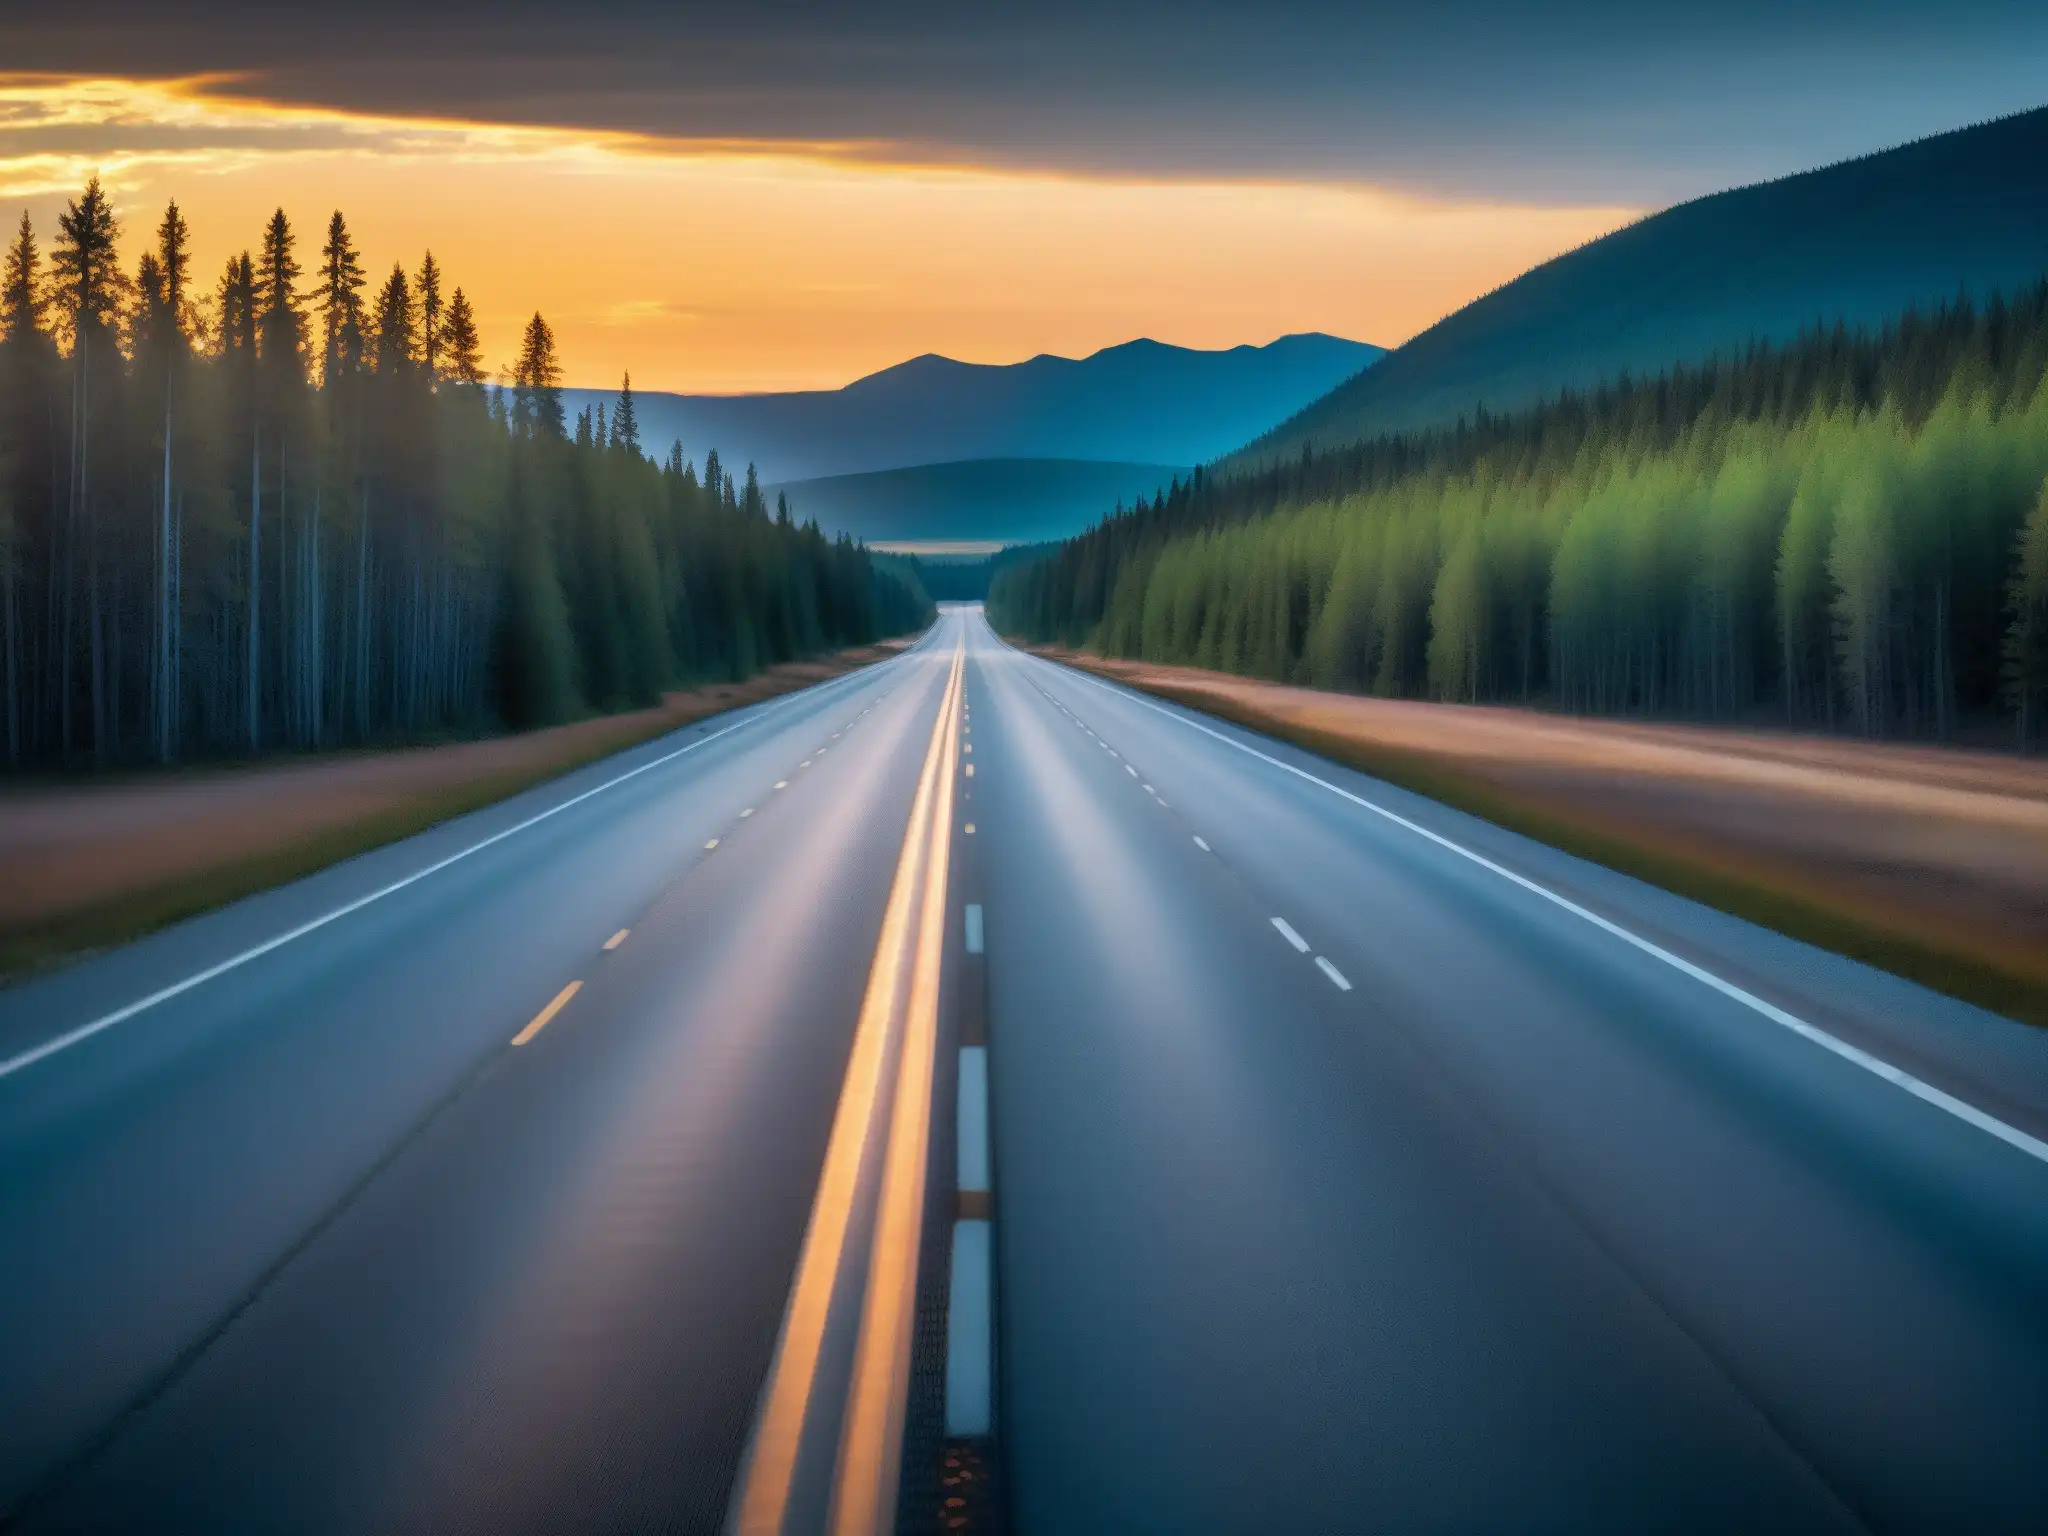 La misteriosa y desolada TransCanada Highway al atardecer, evocando la leyenda del Autoestopista Fantasma